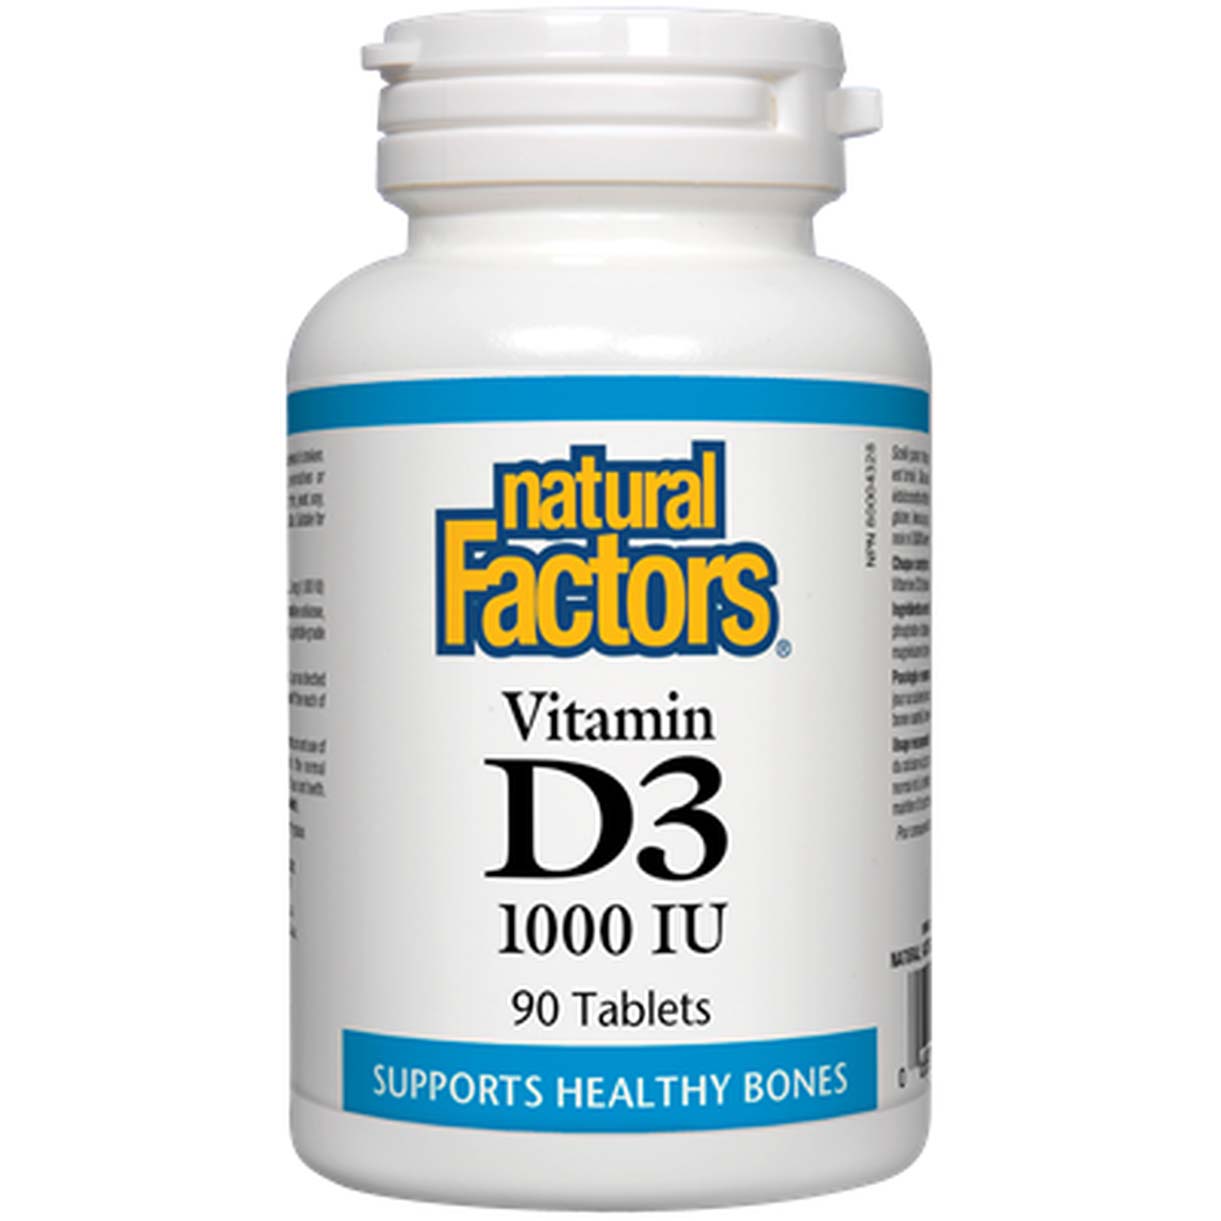 Natural Factors Vitamin D3, 1000 IU, 90 Tablets